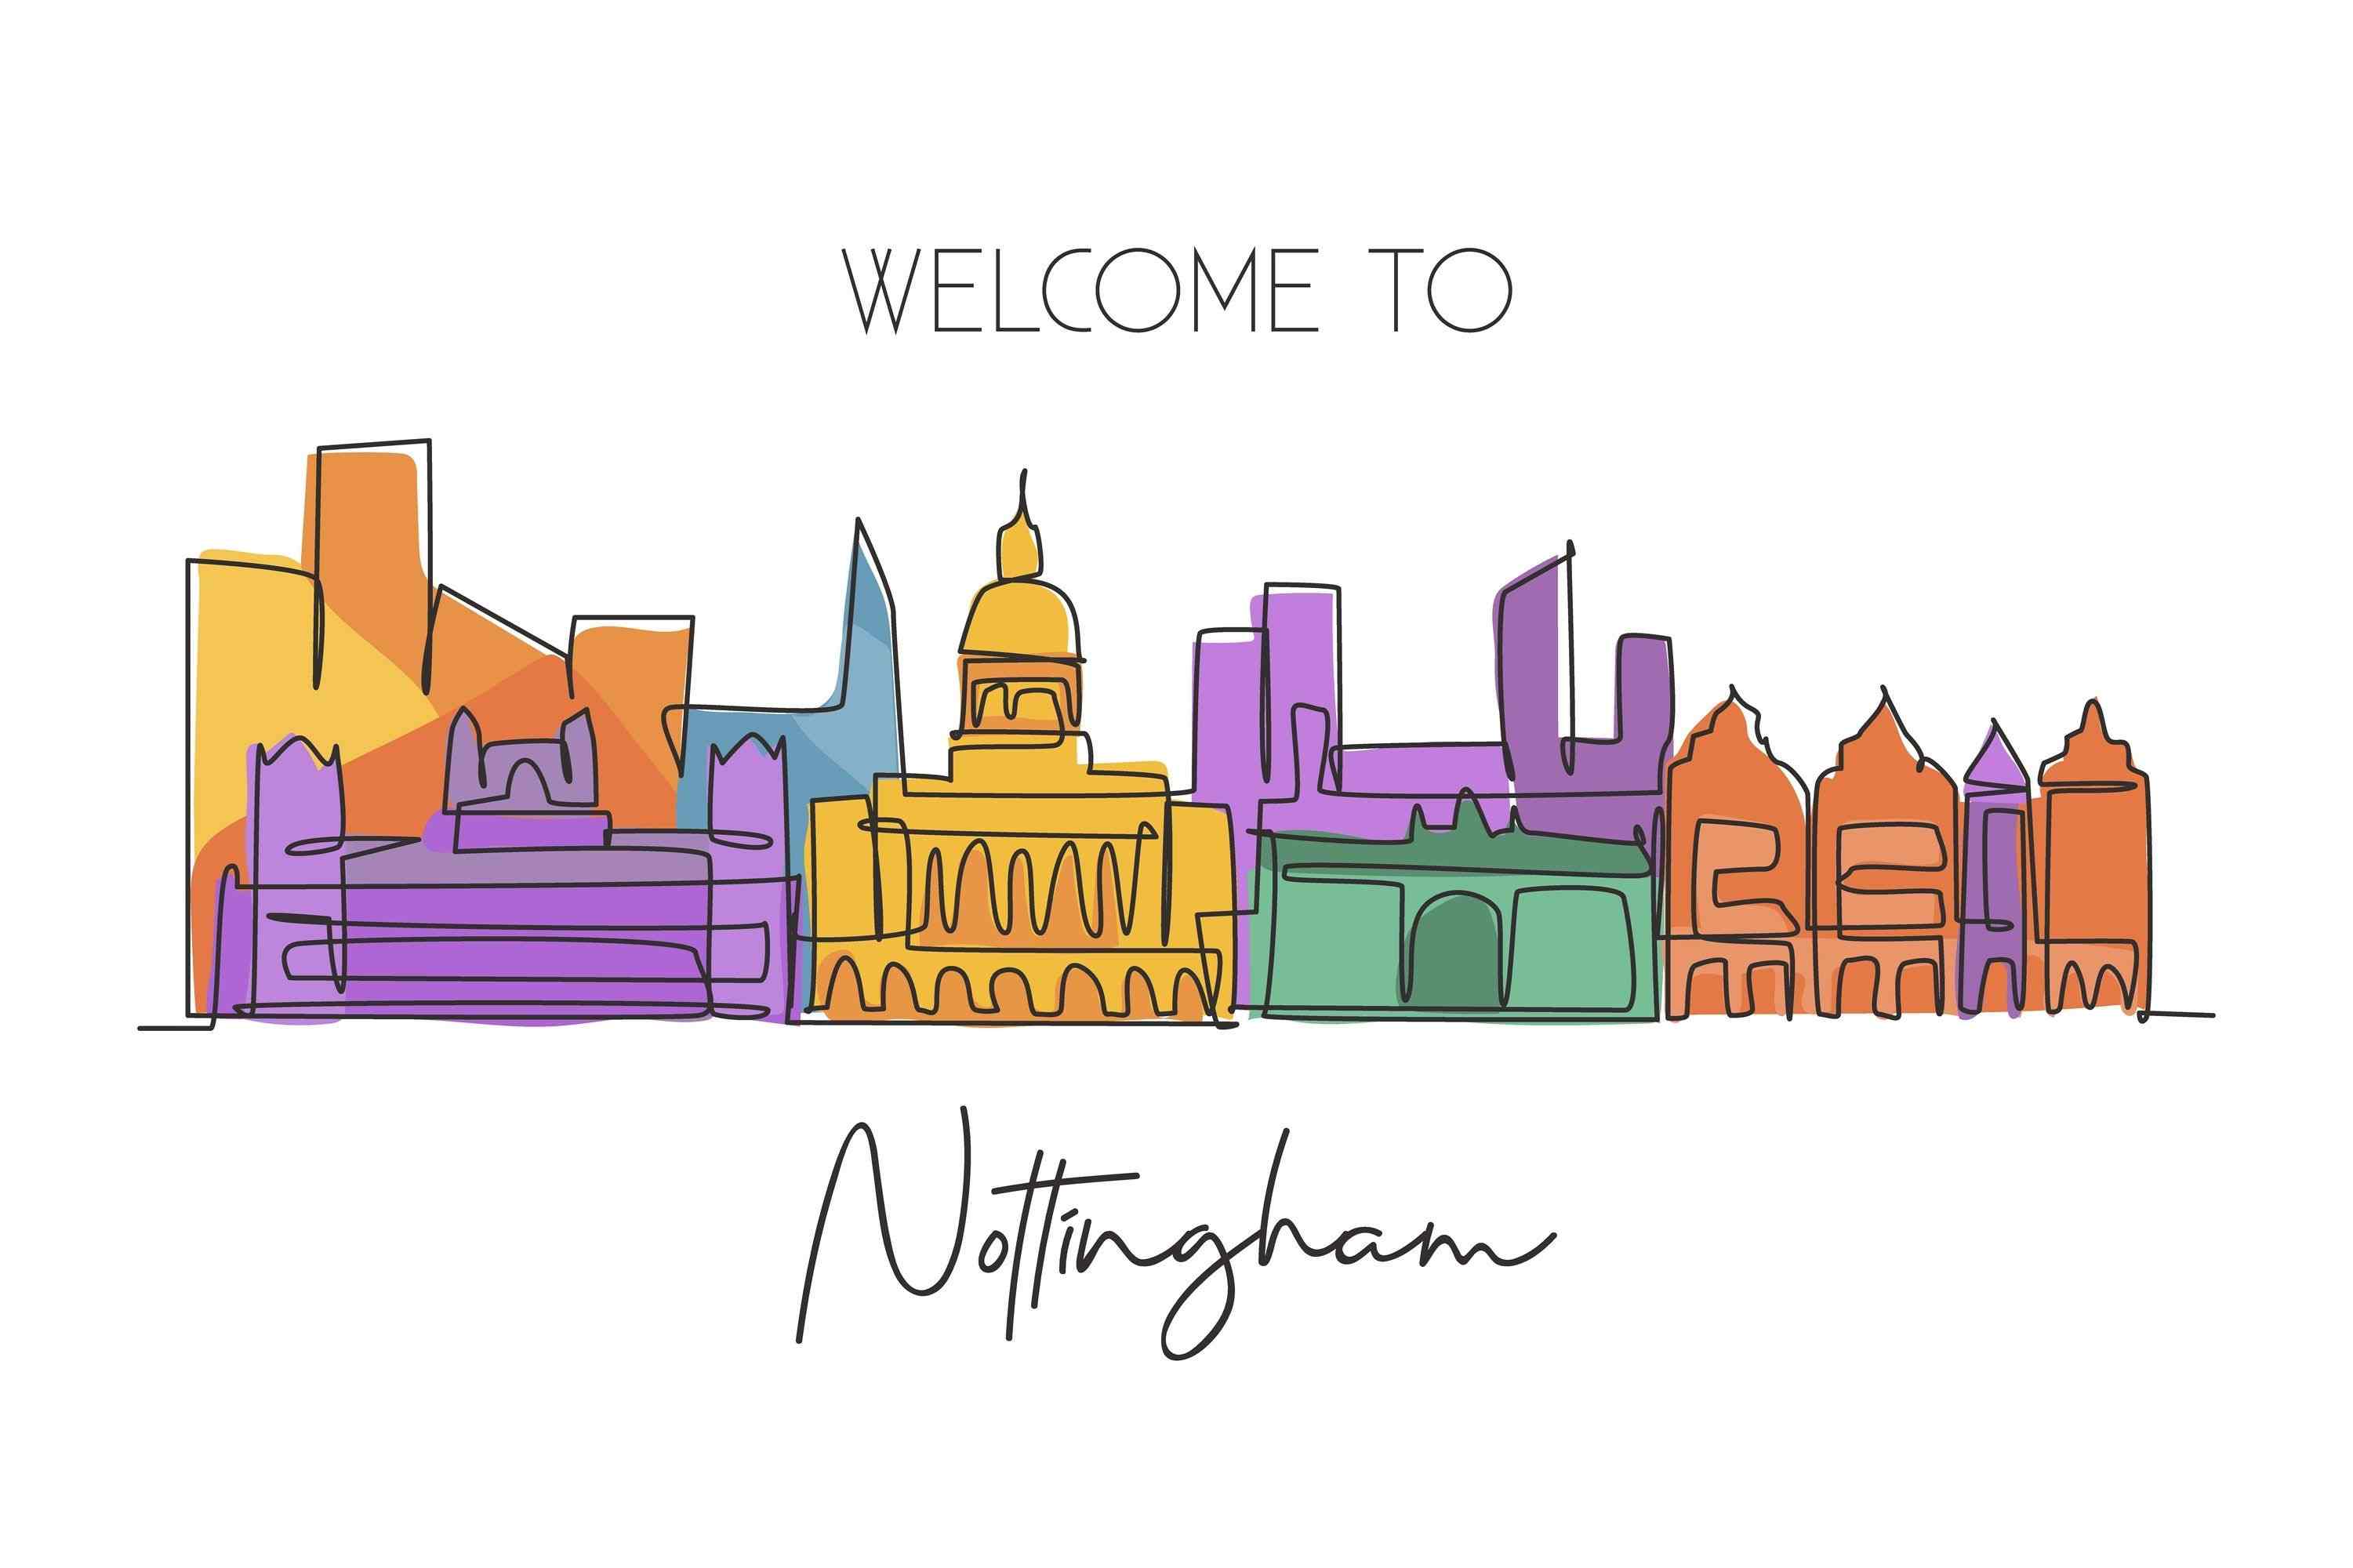 Nottingham City Guide